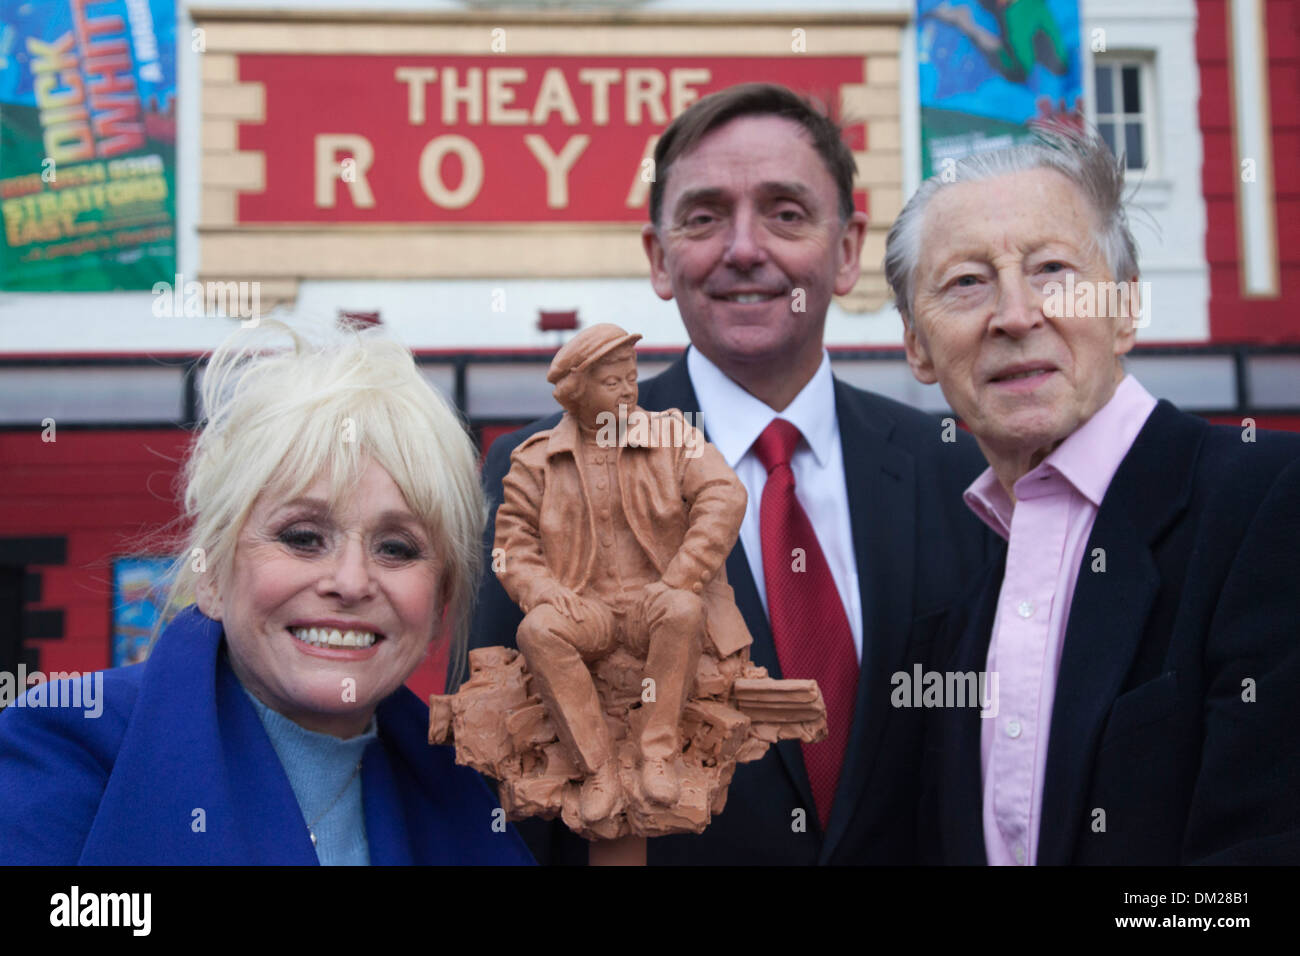 Barbara Windsor mit Sir Robin Wales, Bürgermeister von Newham (l) und Schauspieler Murray Melvin (r), Stratford, London, UK Stockfoto